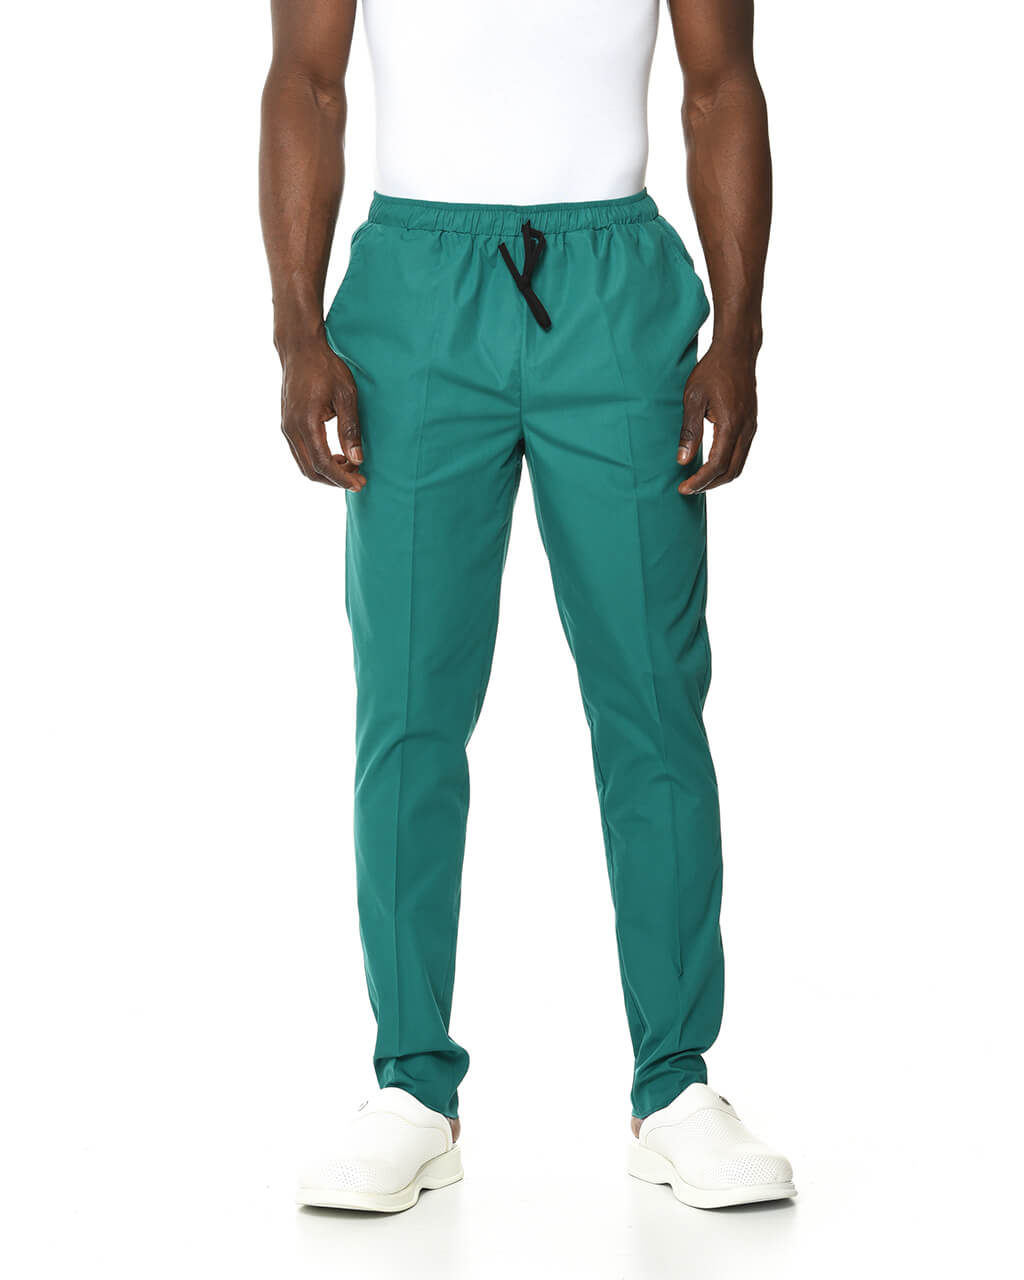 LAME Outlet - Relax Cerrahi Yeşil Pantolon